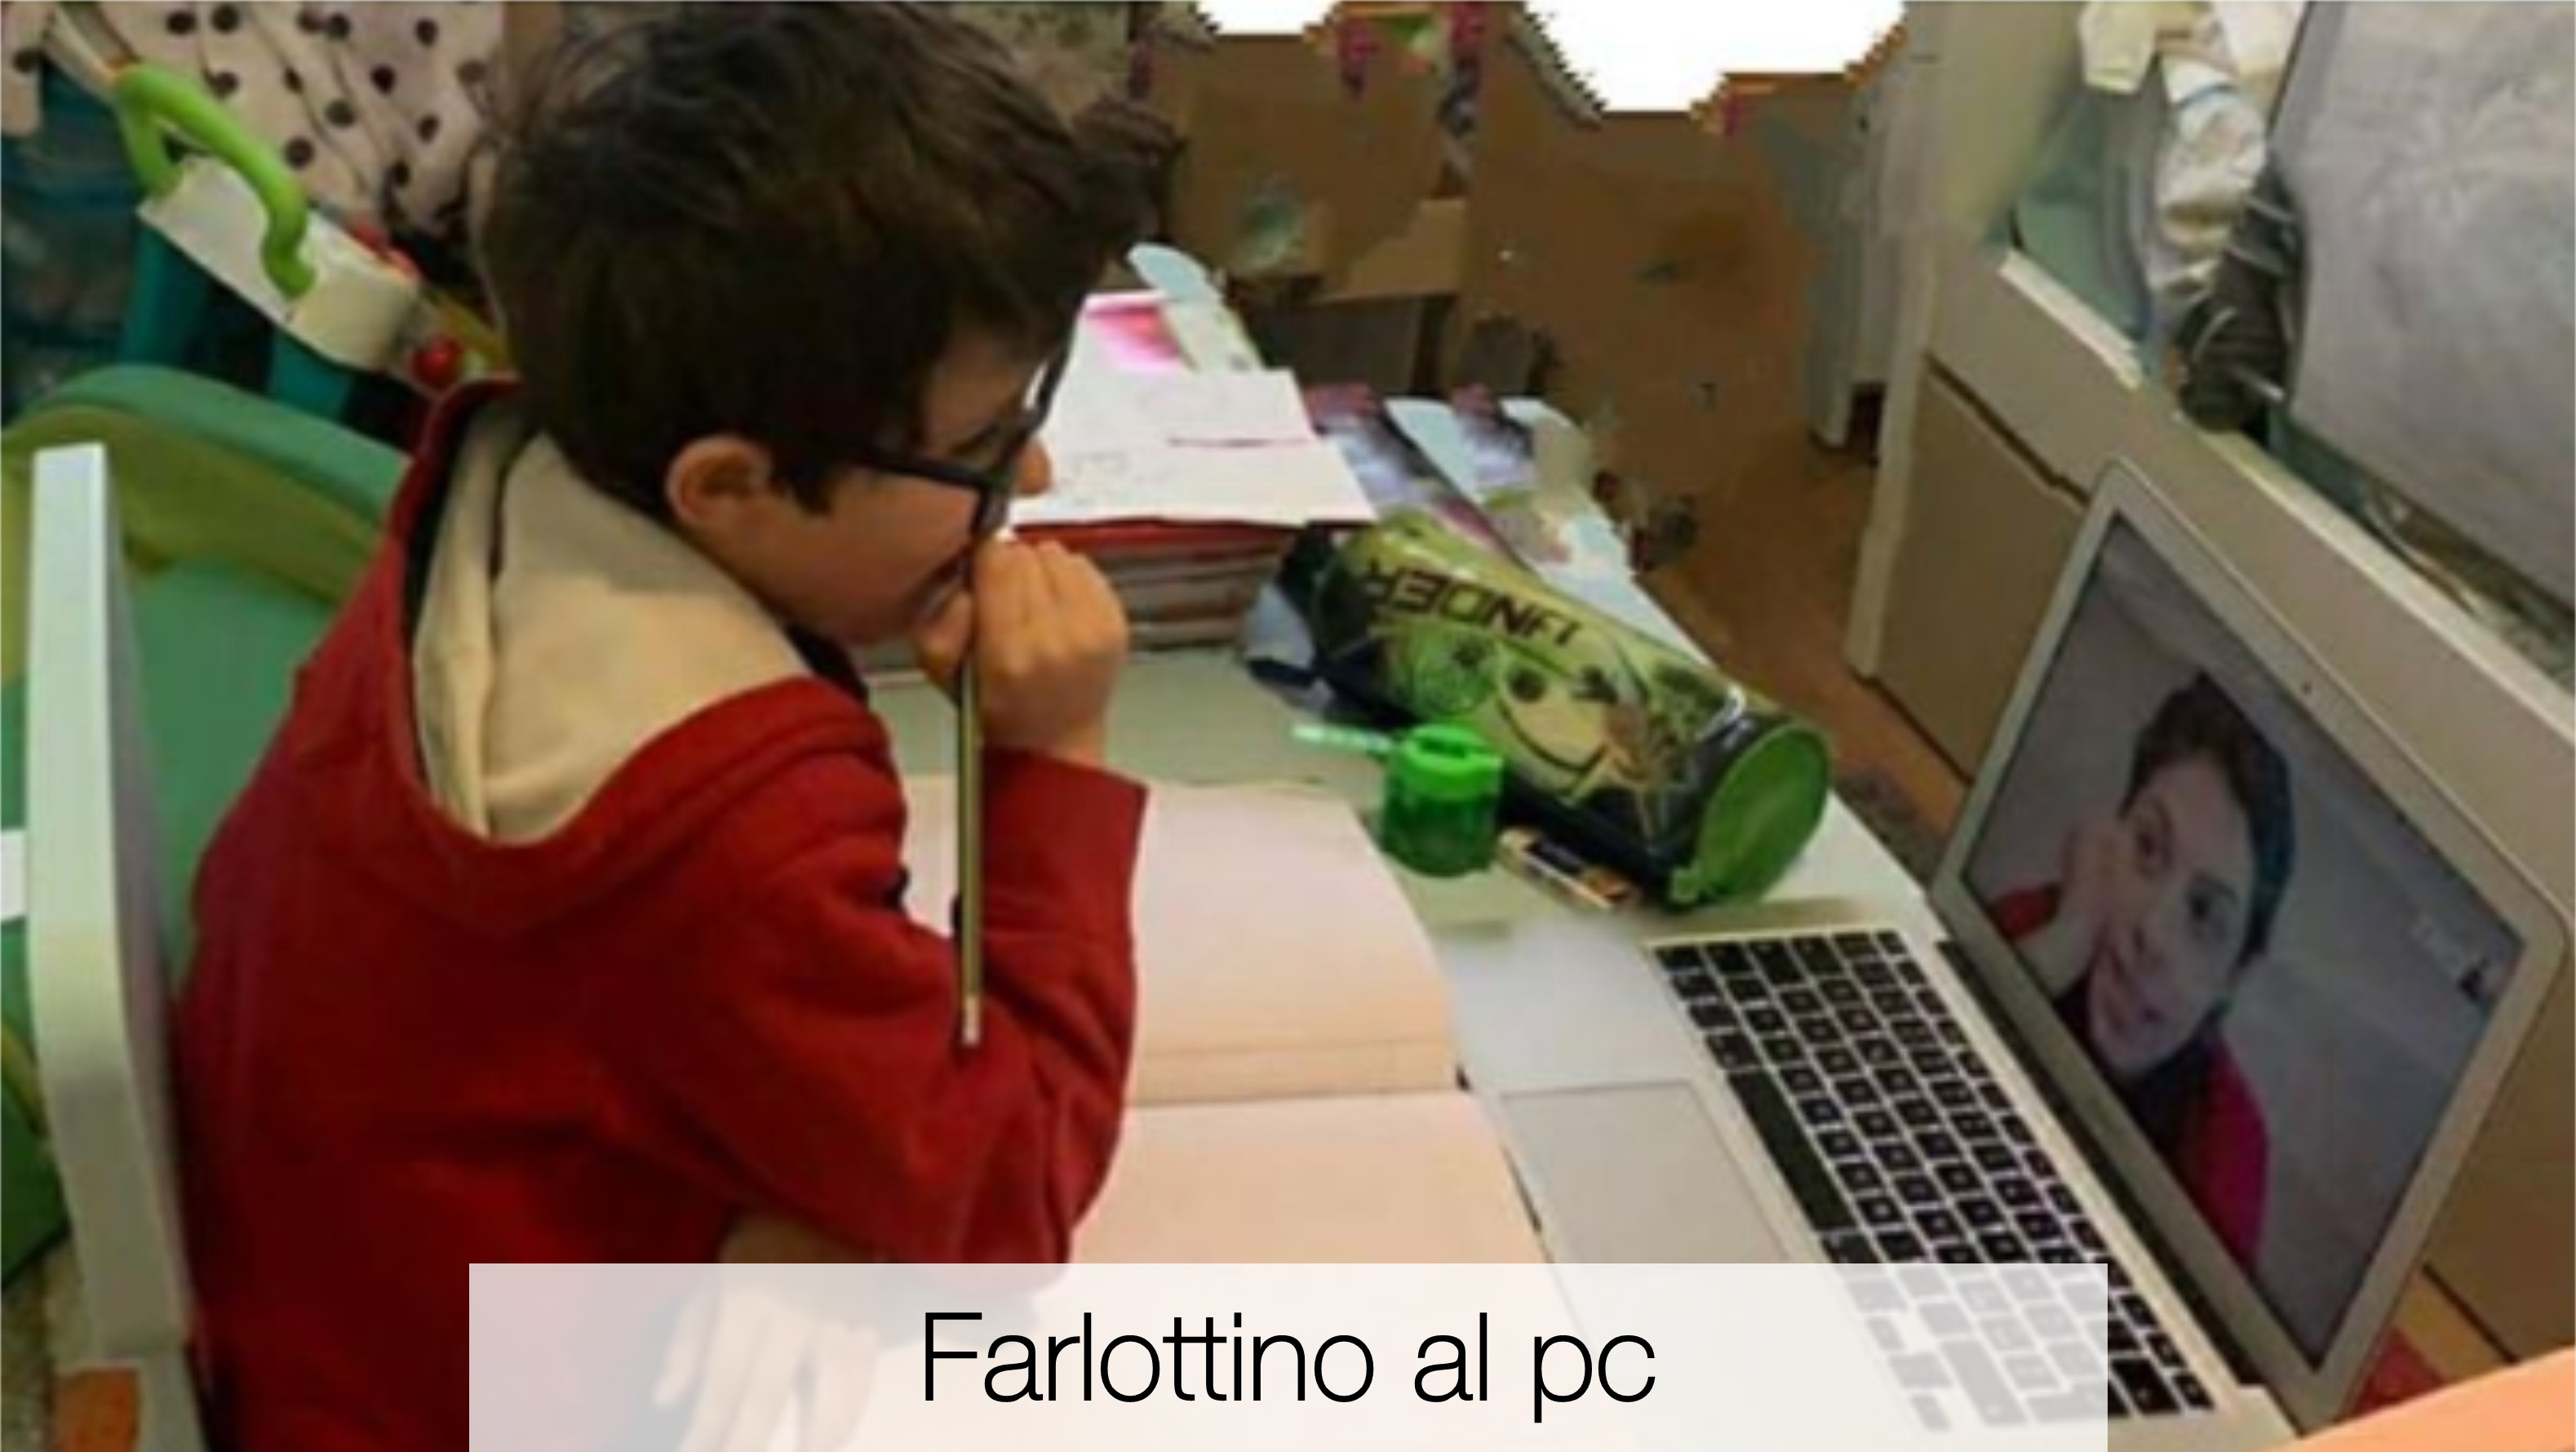 Un Chromebook nello zaino-Istituto Farlottine - Bologna